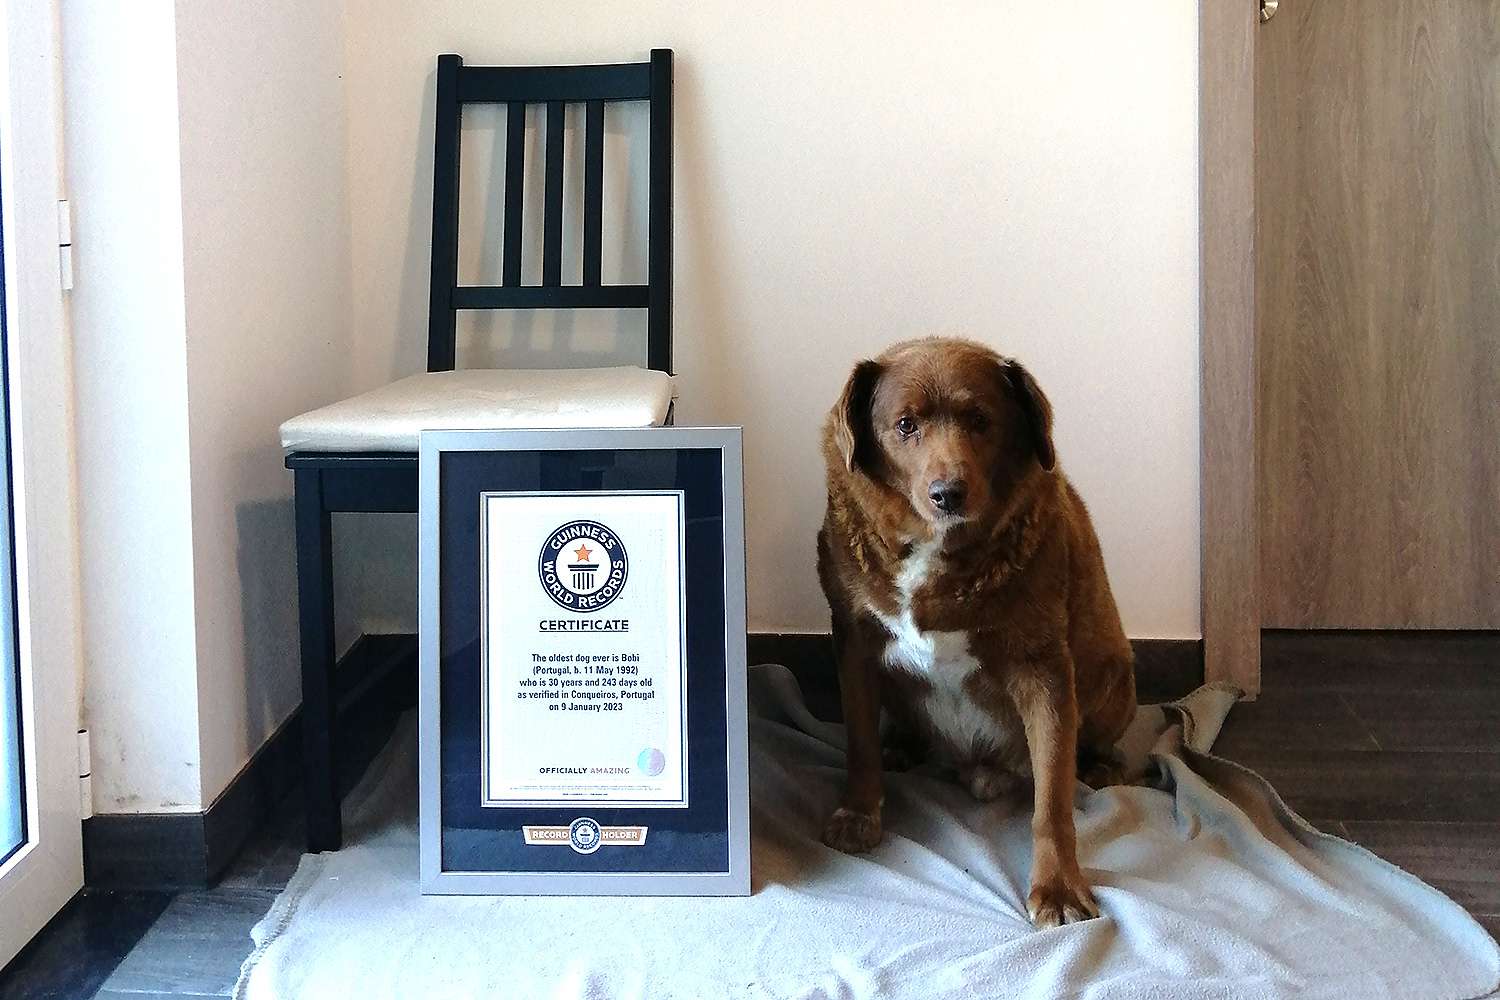 ลูกสุนัขวัย 30 ปีจากโปรตุเกสได้รับการเสนอชื่อให้เป็นสุนัขที่มีอายุมากที่สุดในโลกหลังจากสุนัขตัวสุดท้ายคว้าตำแหน่ง